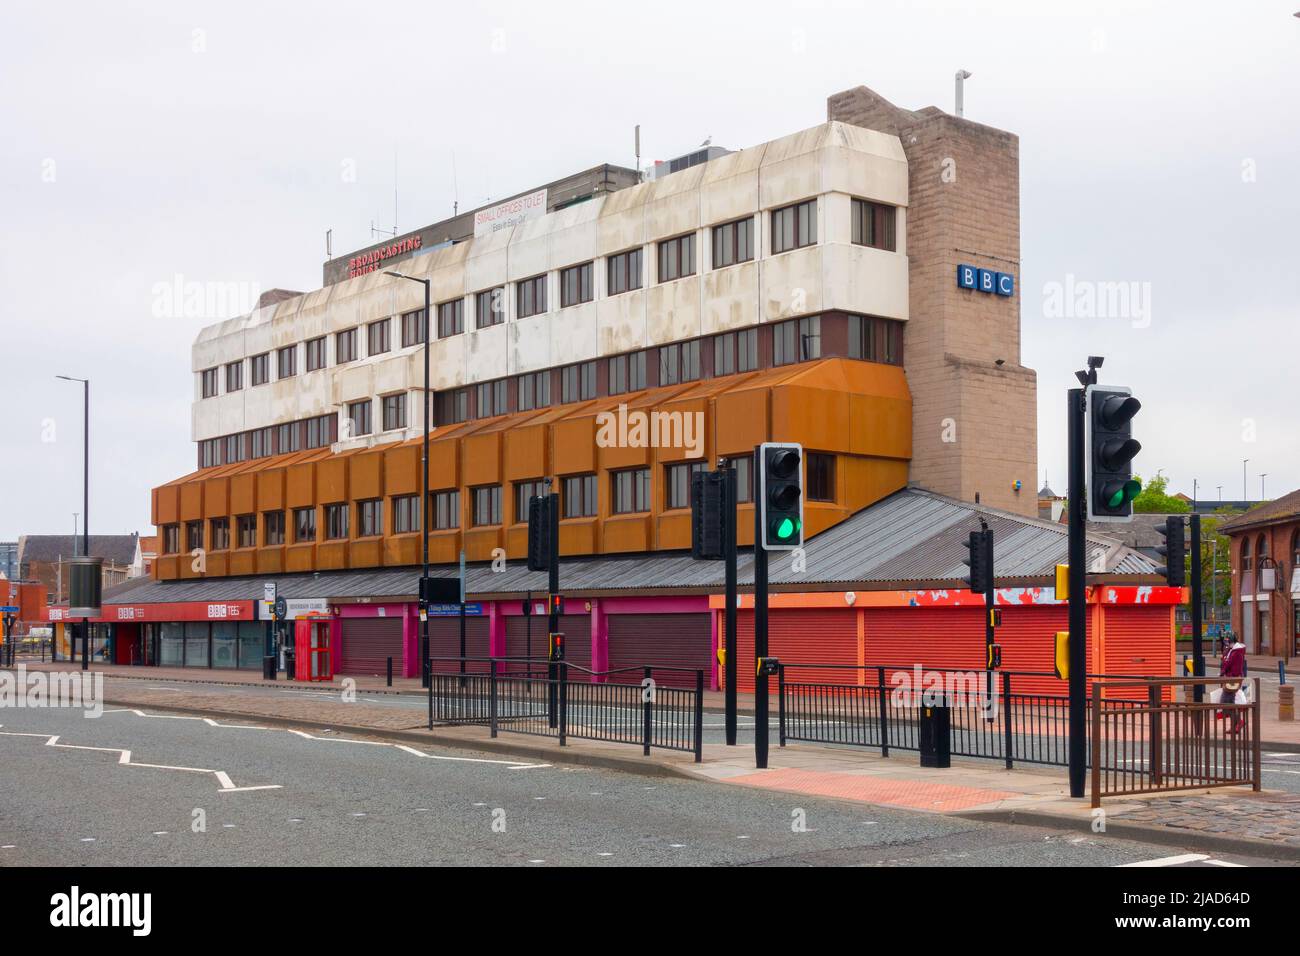 British Broadcasting Corporation BBC Tees edificio de la radiodifusión local en Middlesbrough Foto de stock